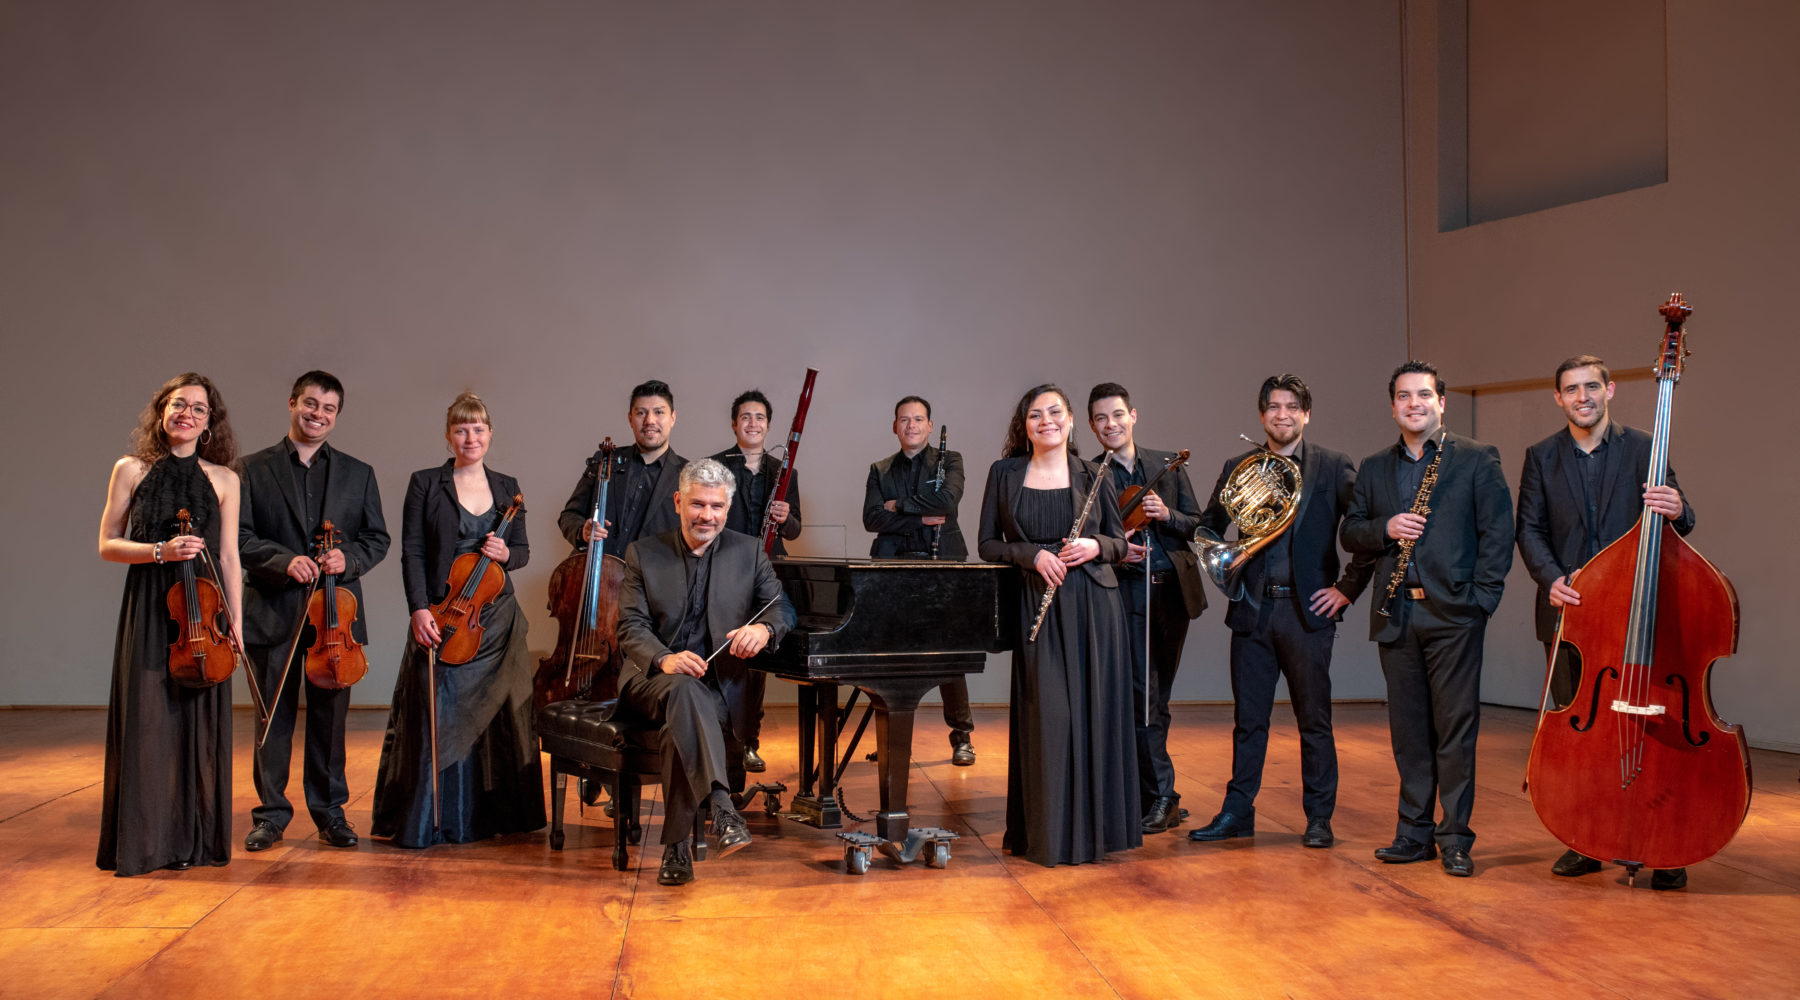 La Orquesta de Cámara de Valdivia presenta concierto de Navidad para toda la familia